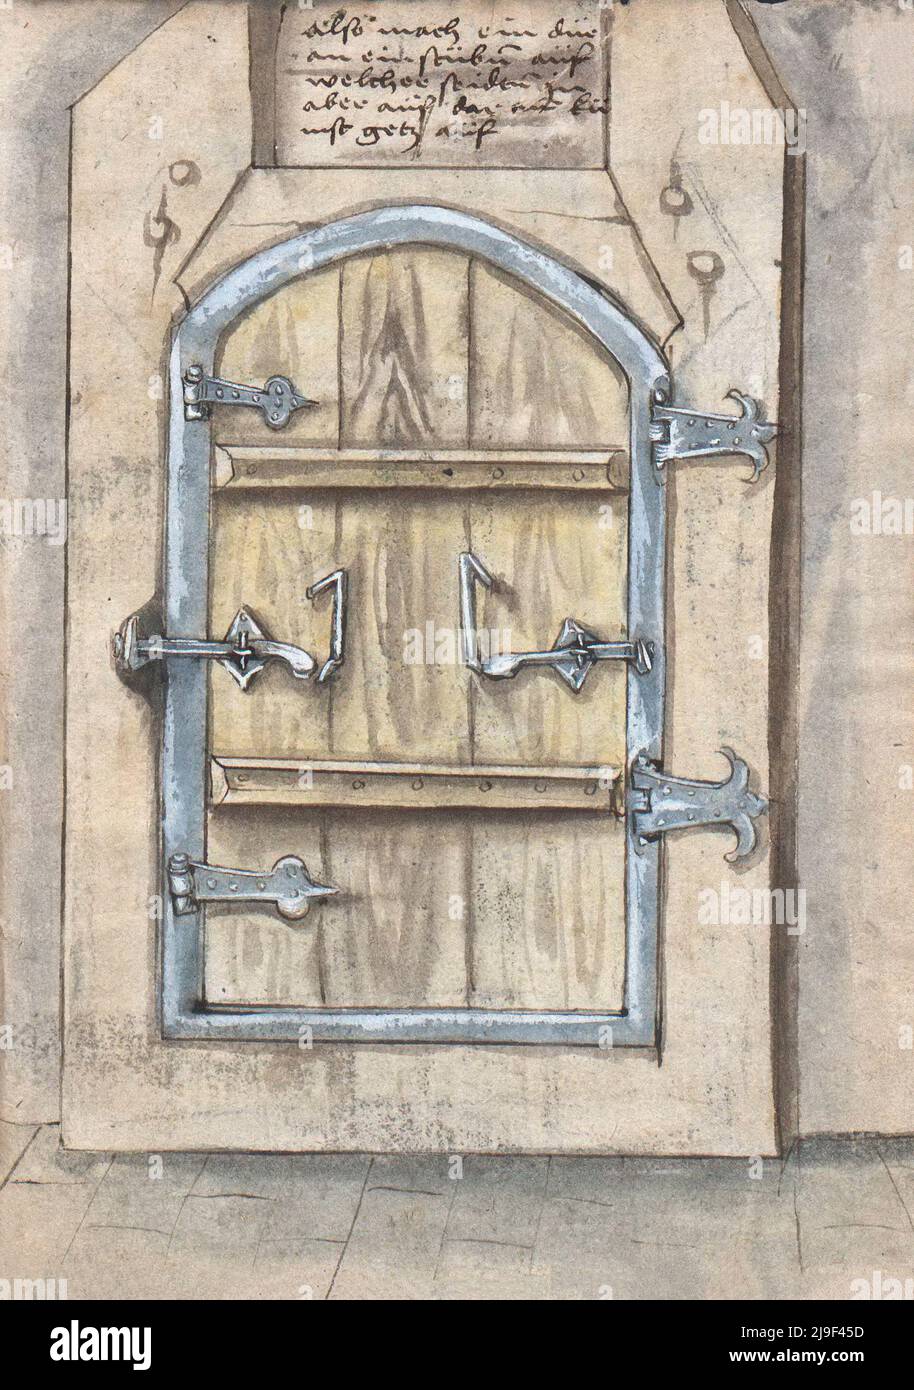 Ilustración medieval de las bisagras y cerraduras de las puertas. Las herramientas de Martin Löffelholz (1505) Löffelholtz Codex. Ilustraciones y descripciones de todo esto Foto de stock